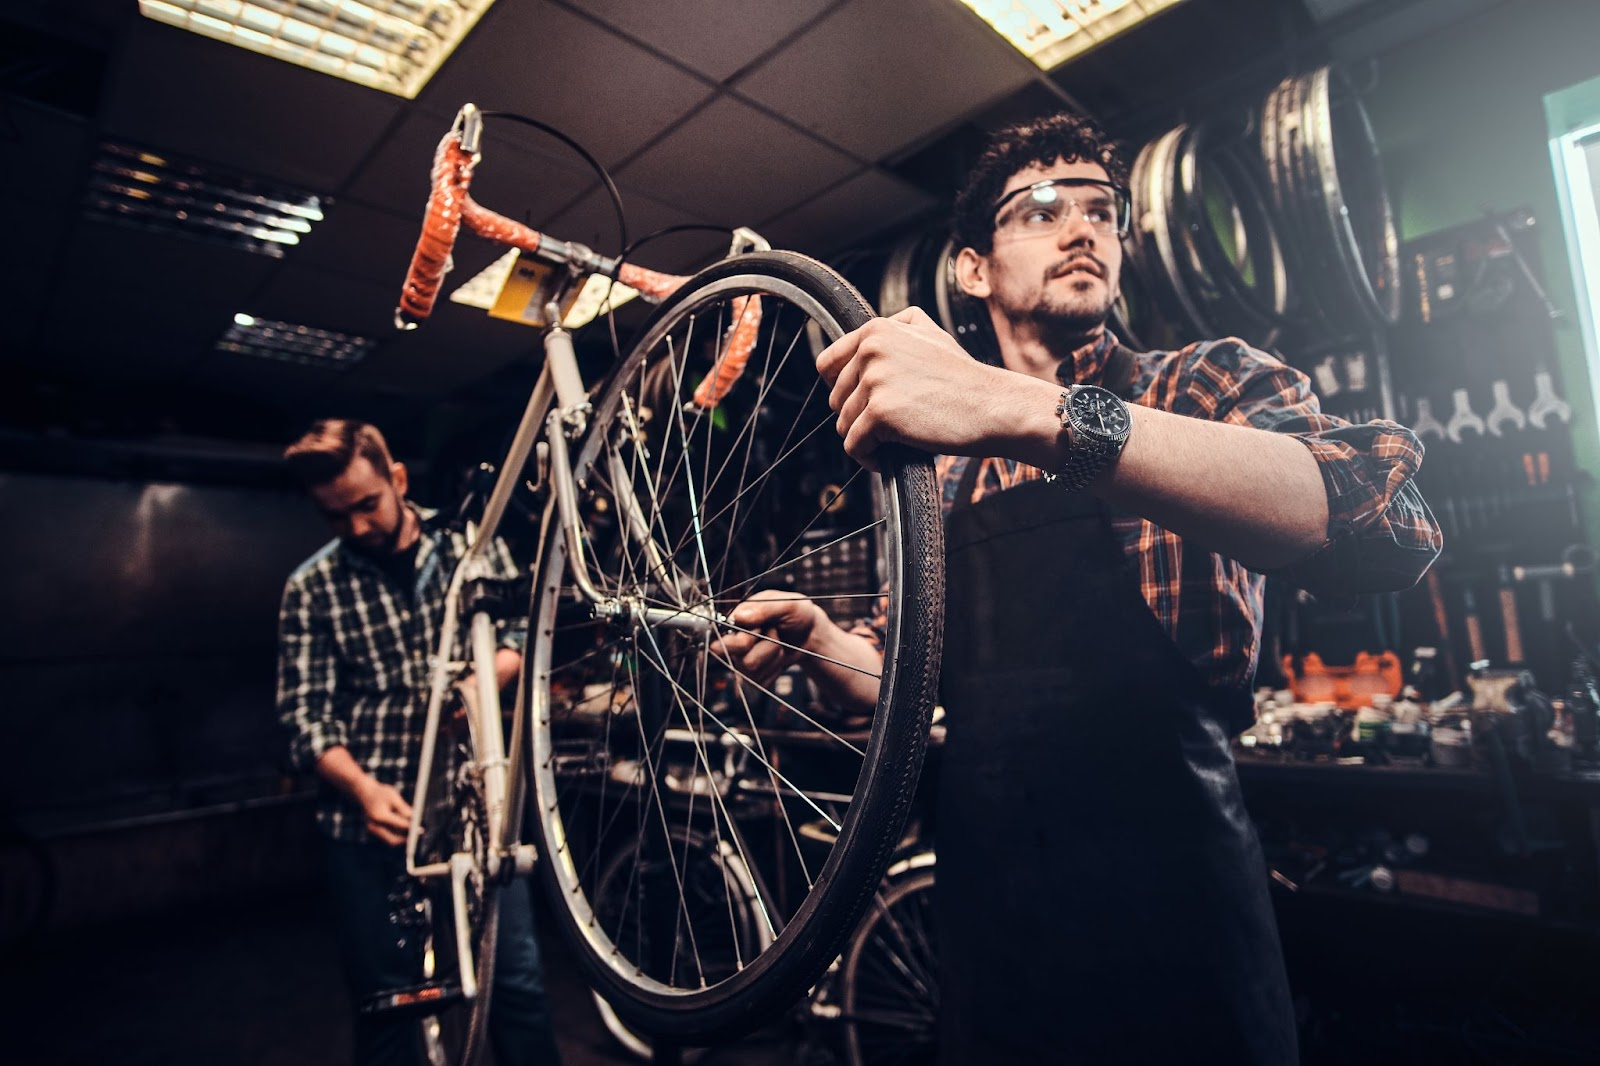 Bike Mechanic Shop Aprons and Tools